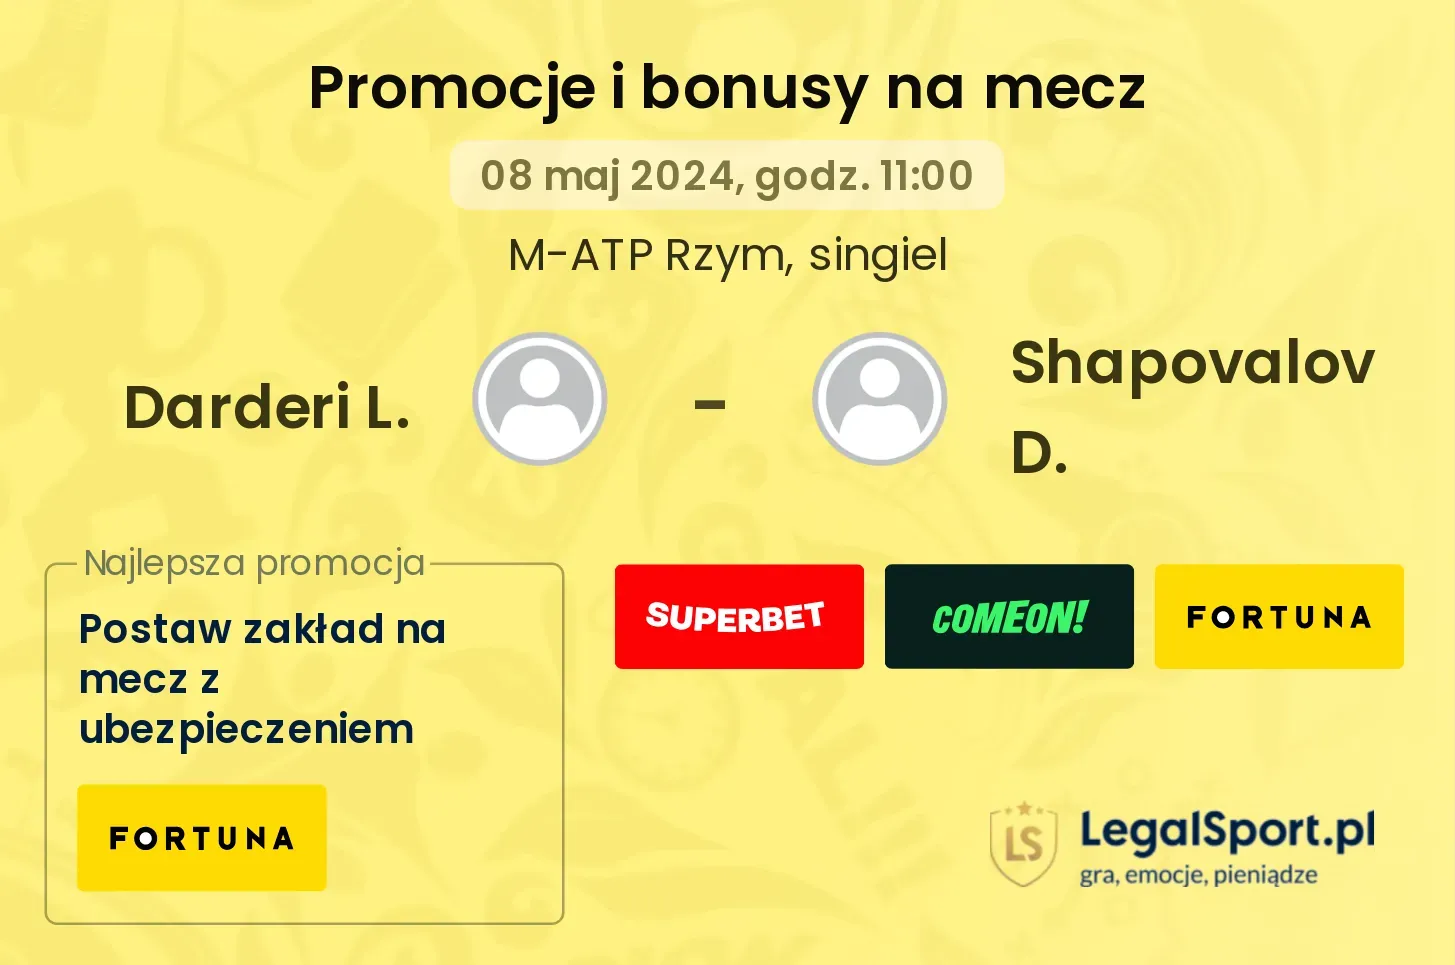 Darderi L. - Shapovalov D. promocje bonusy na mecz